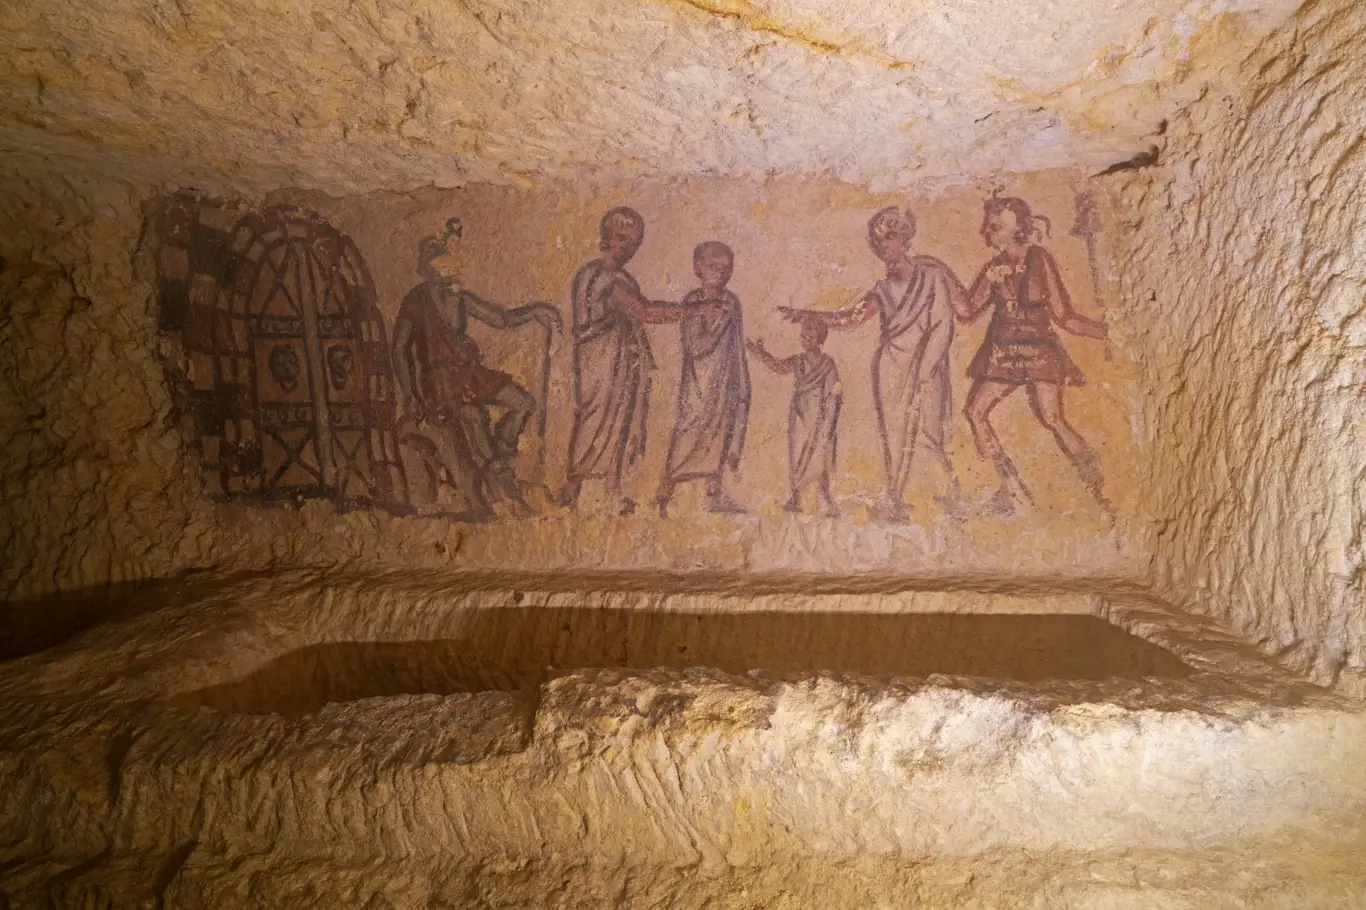 Starověké etruské hrobky v Tarquinii v Itálii. Malované pohřební komory.